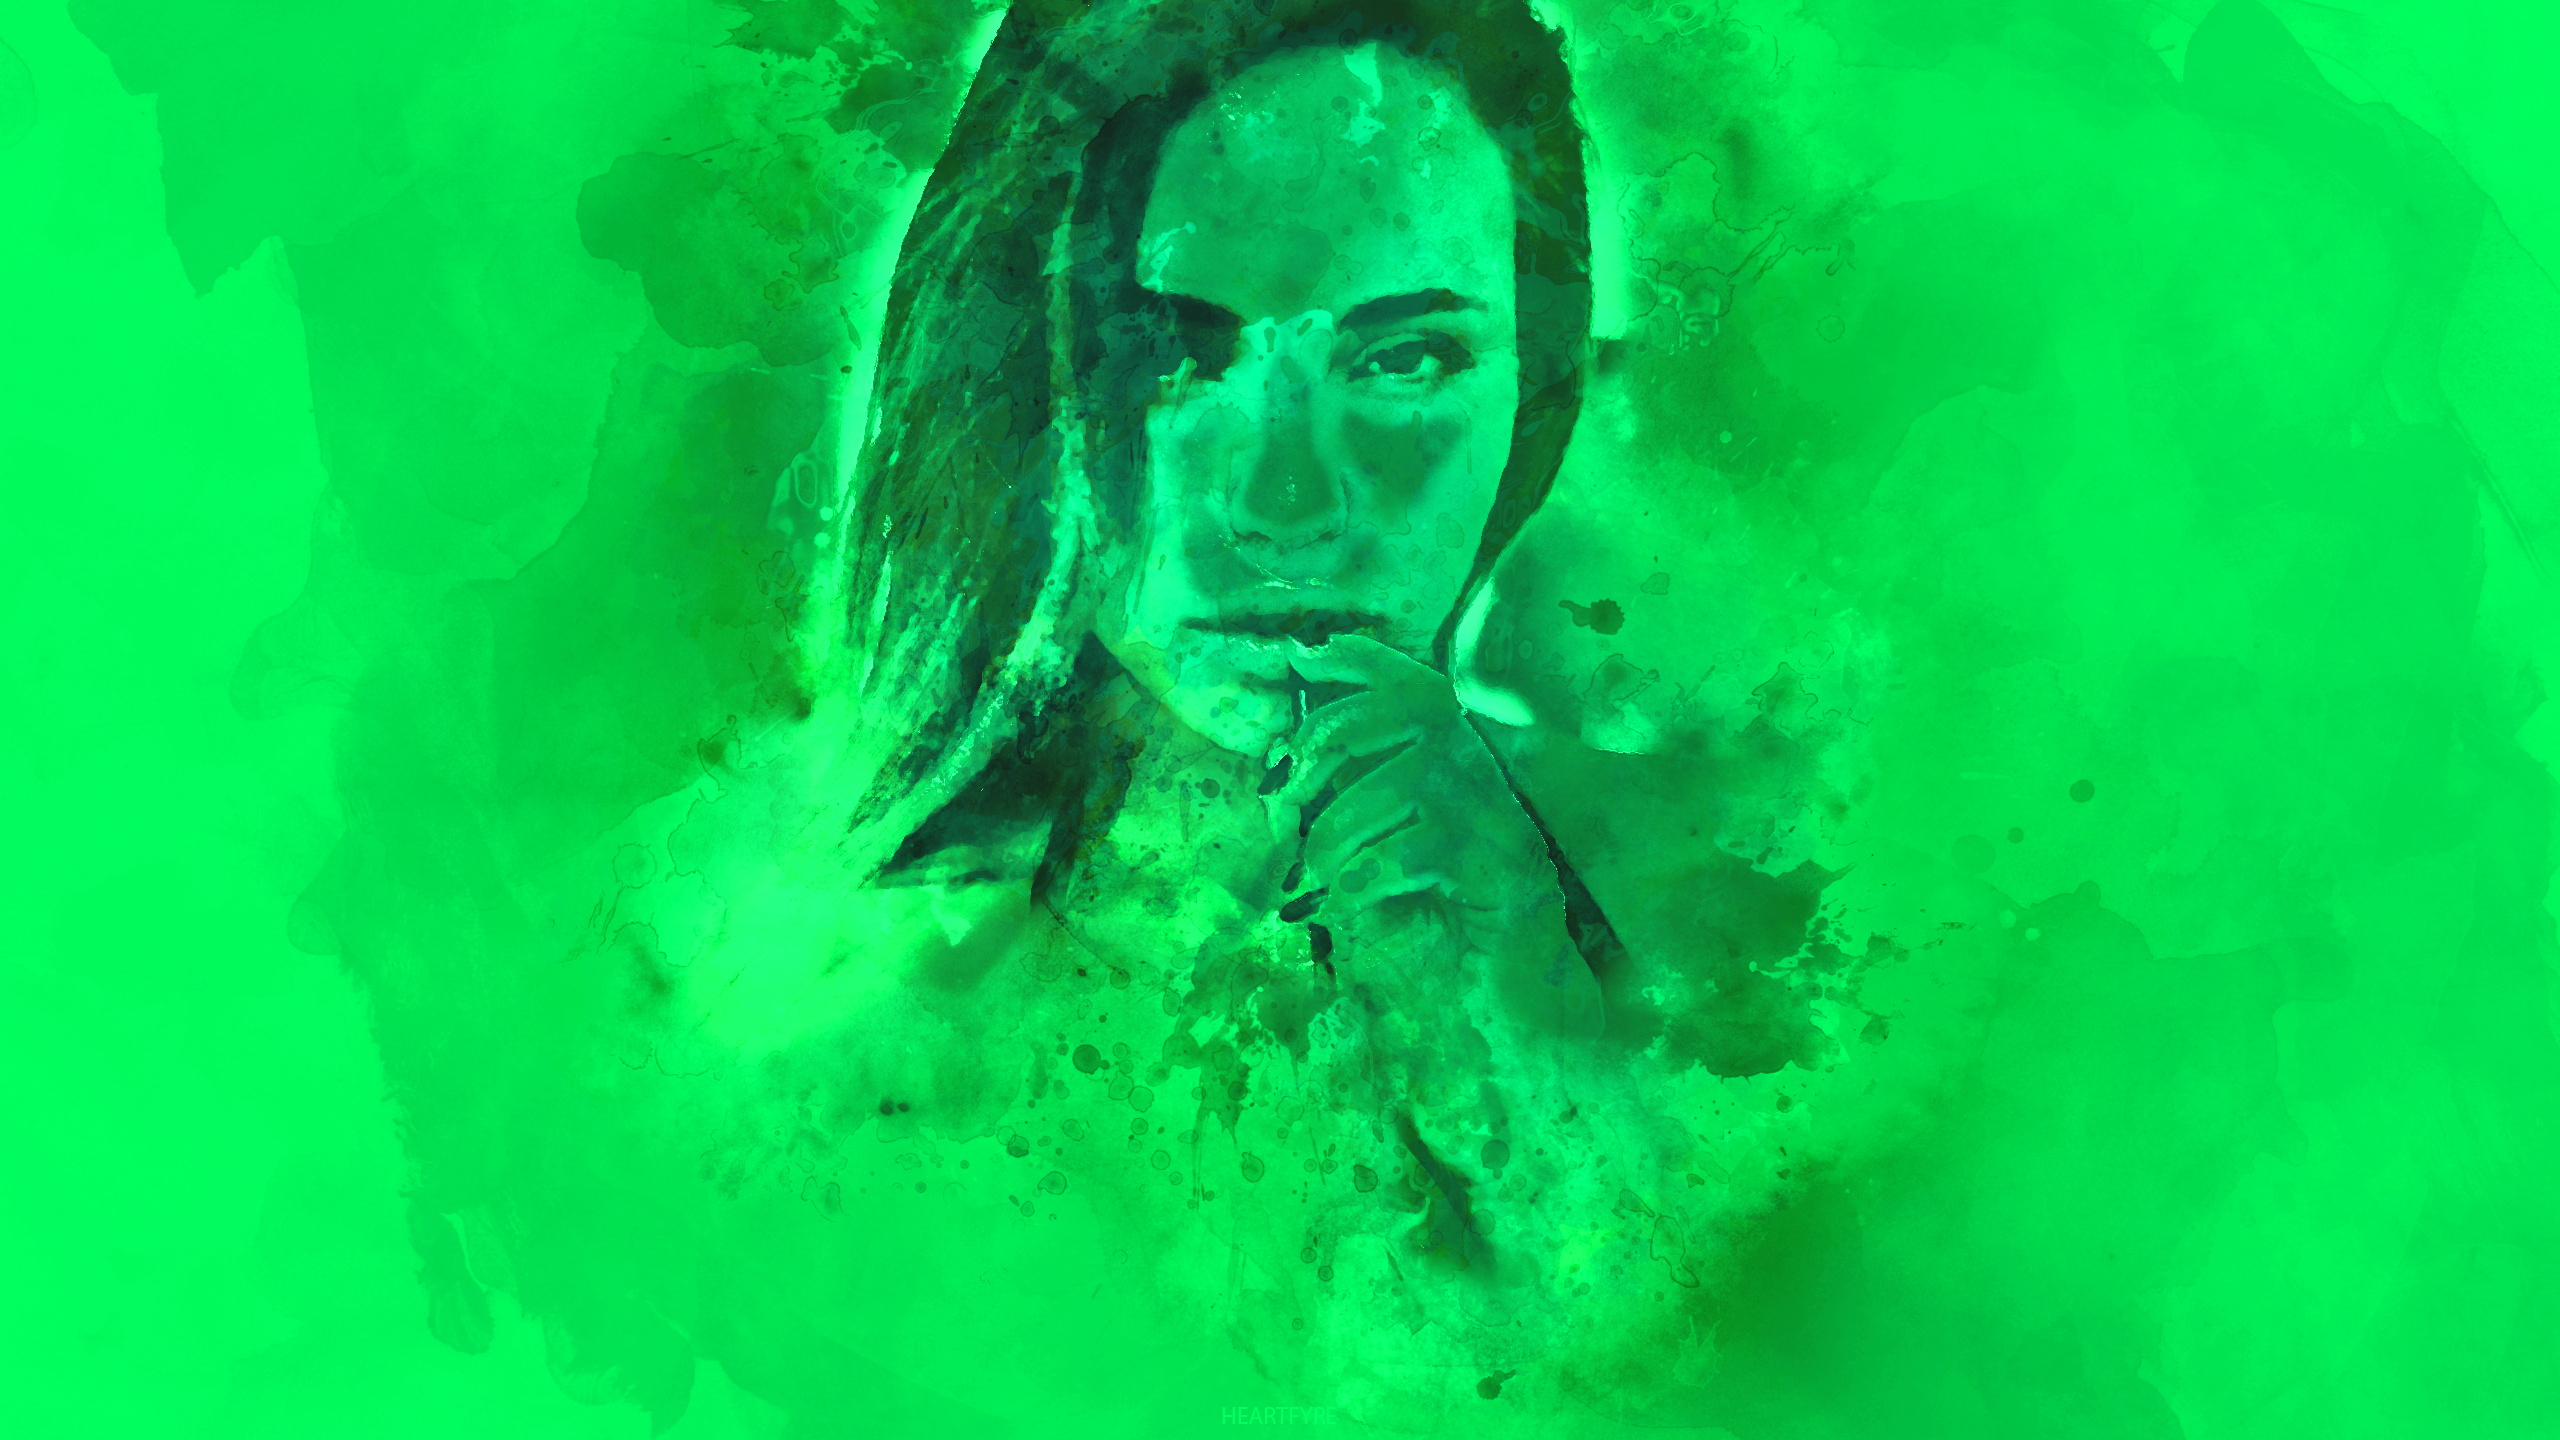 People 2560x1440 watercolor portrait green green background women digital art photo manipulation heartfyre watermarked